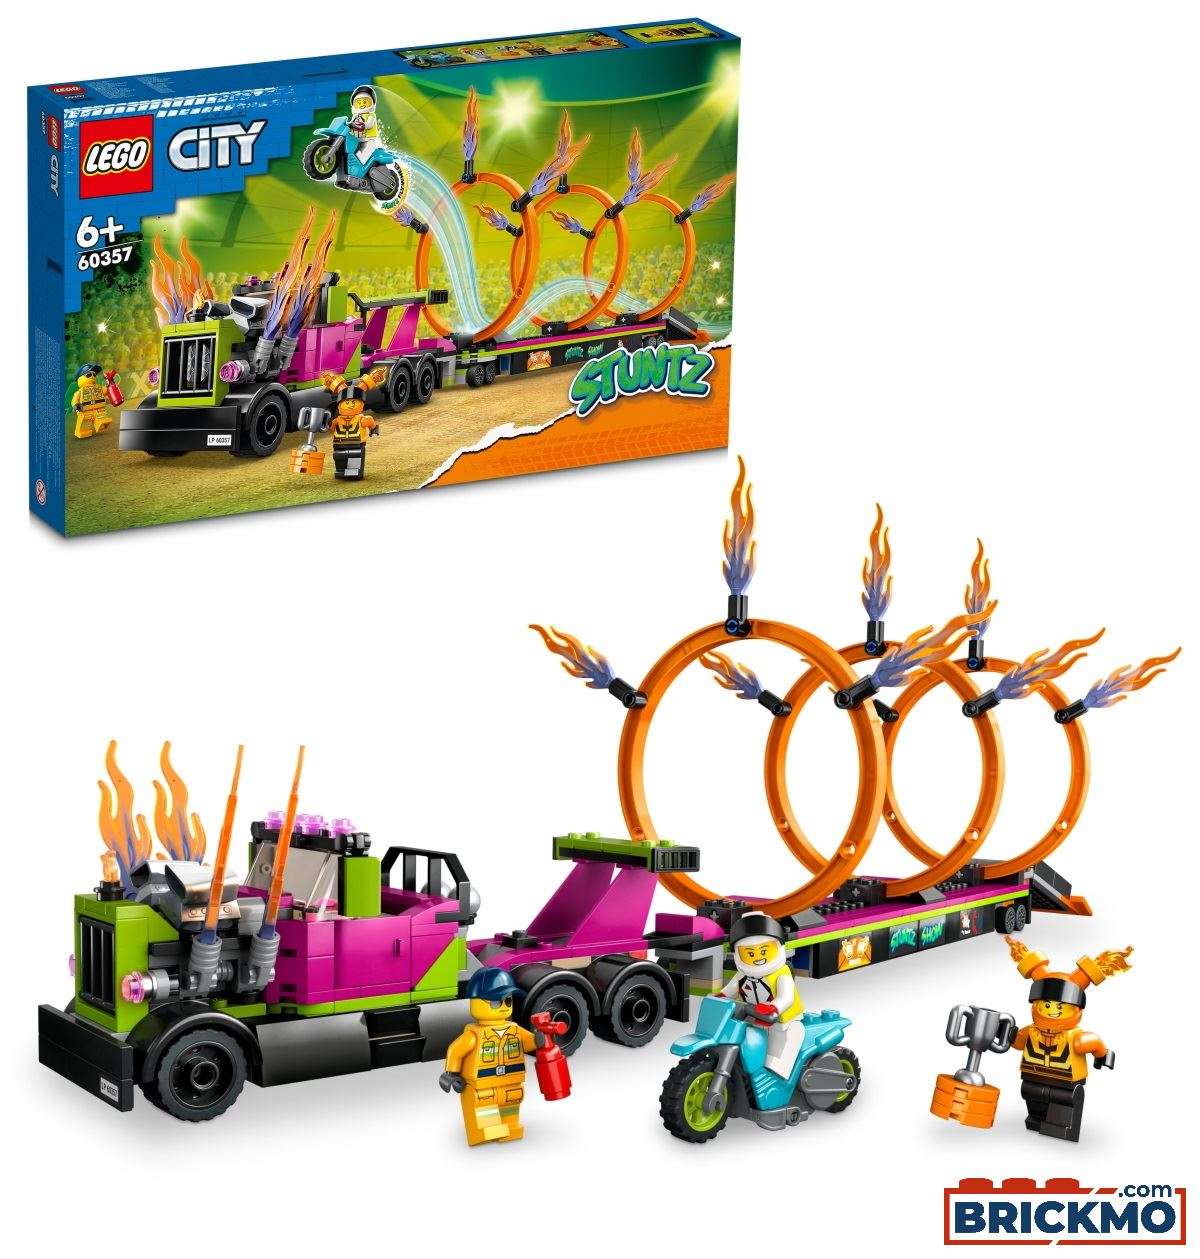 LEGO City 60357 Stunttruck mit Feuerreifen-Challenge 60357